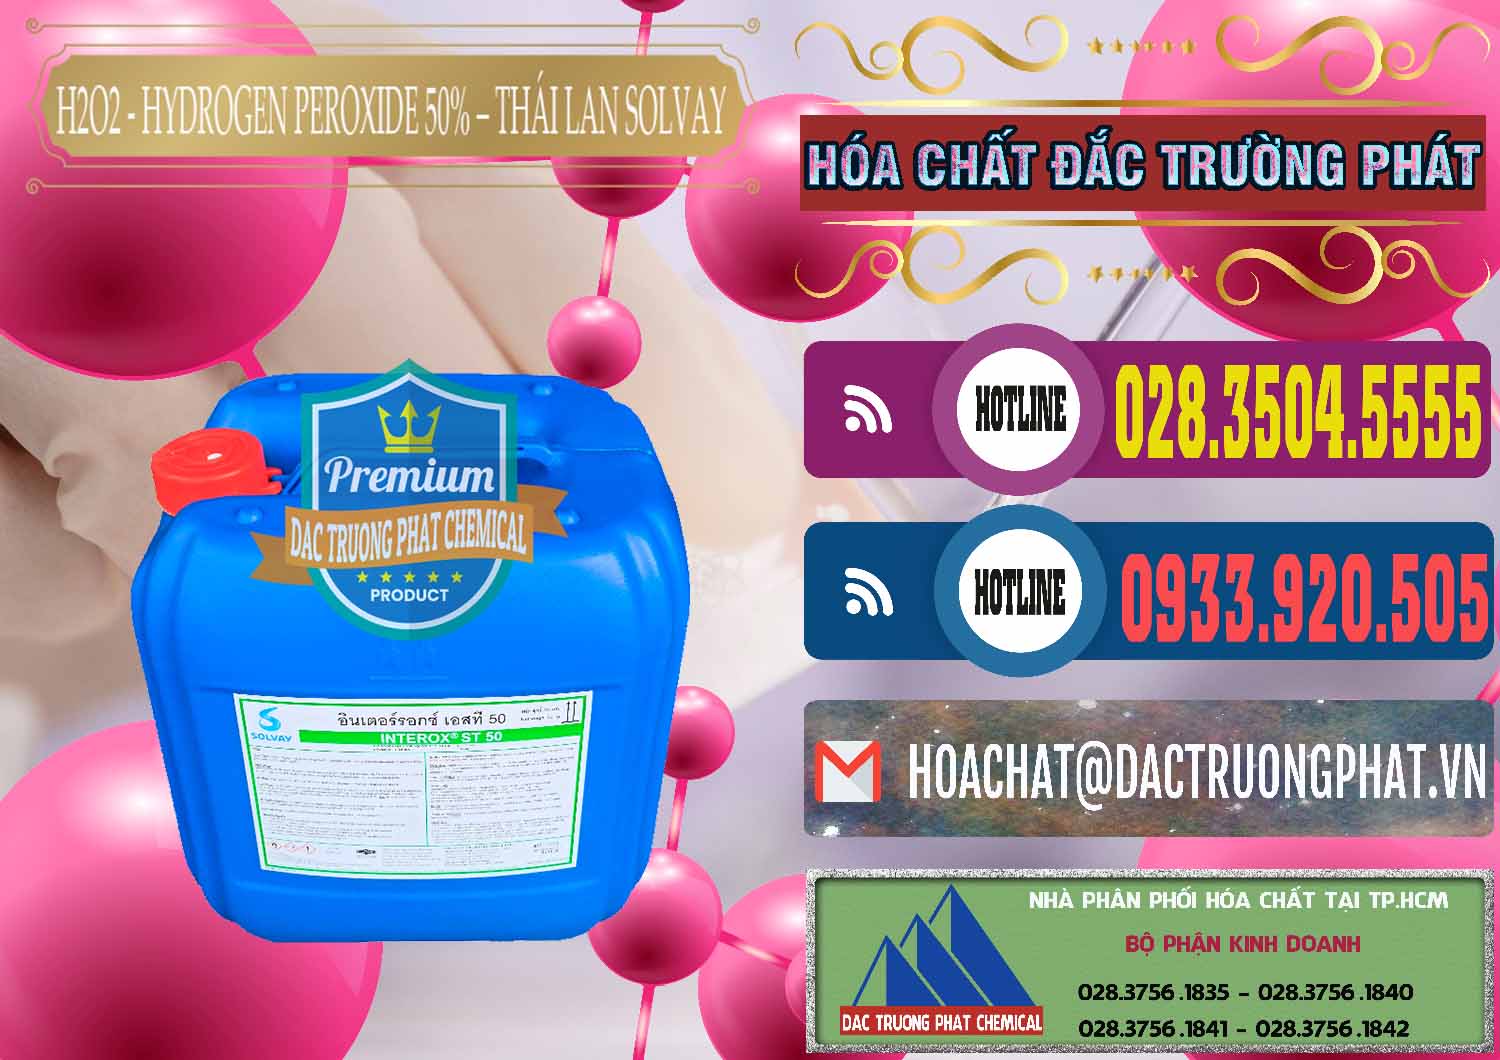 Nơi chuyên bán _ phân phối H2O2 - Hydrogen Peroxide 50% Thái Lan Solvay - 0068 - Chuyên phân phối & cung ứng hóa chất tại TP.HCM - muabanhoachat.com.vn